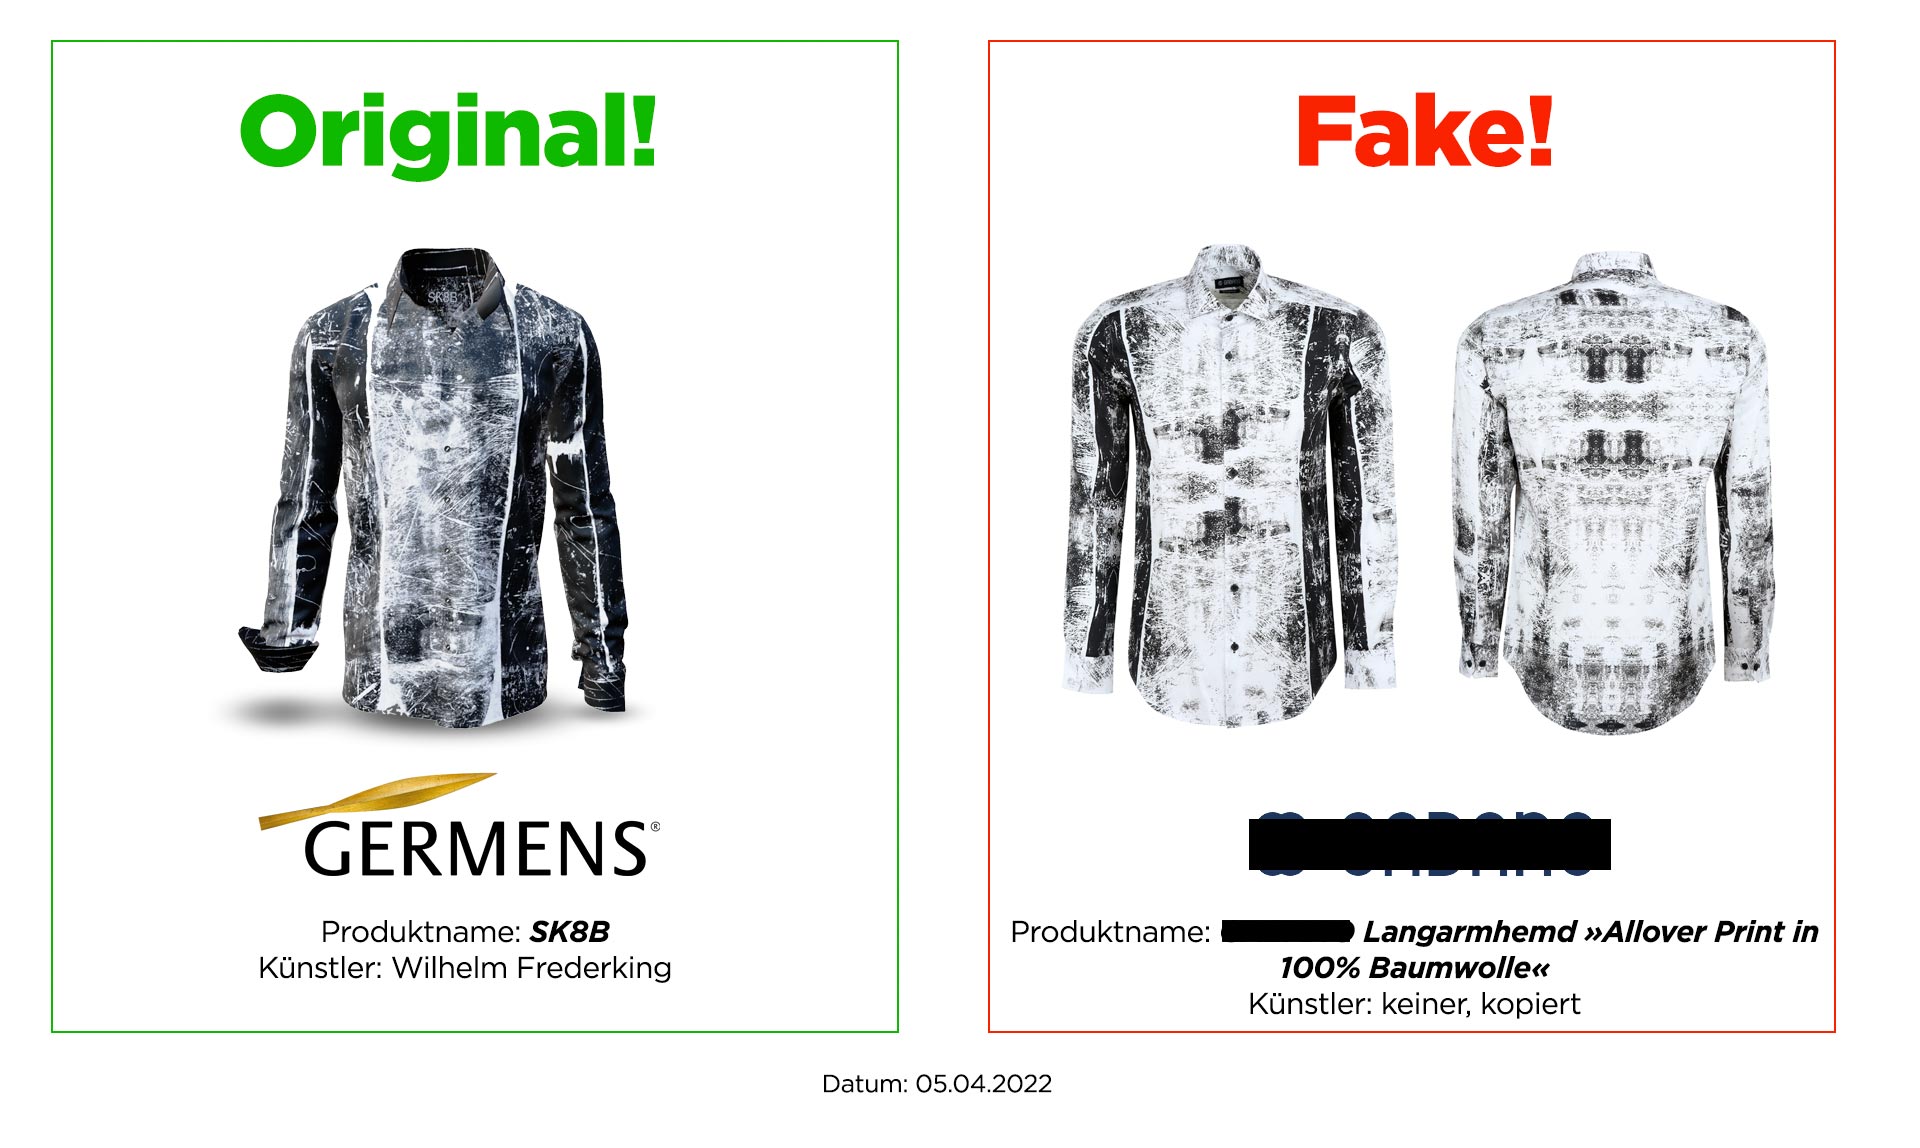 Original GERMENS® shirt SK8B and plagiarism